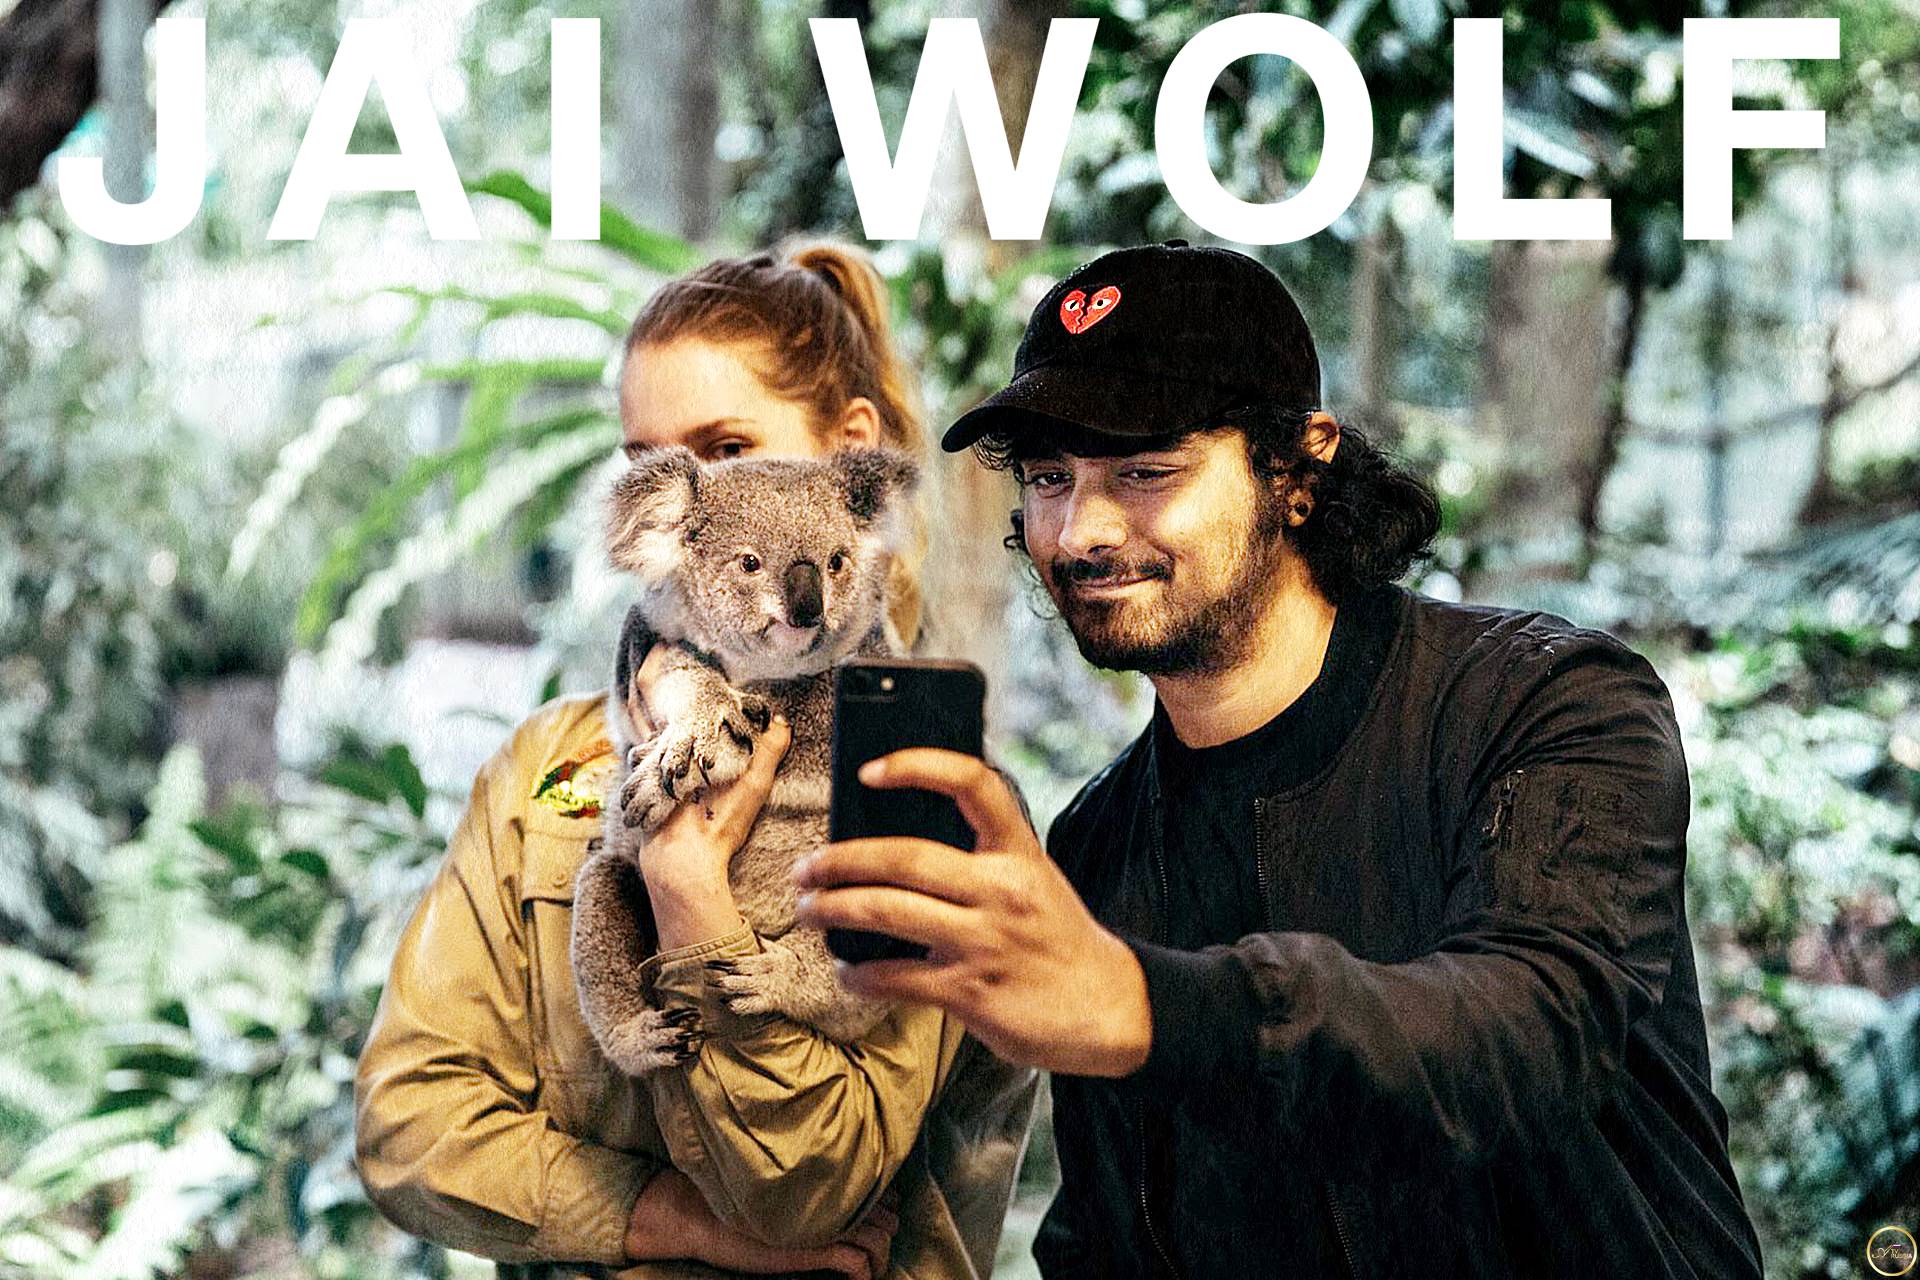 Jai Wolf